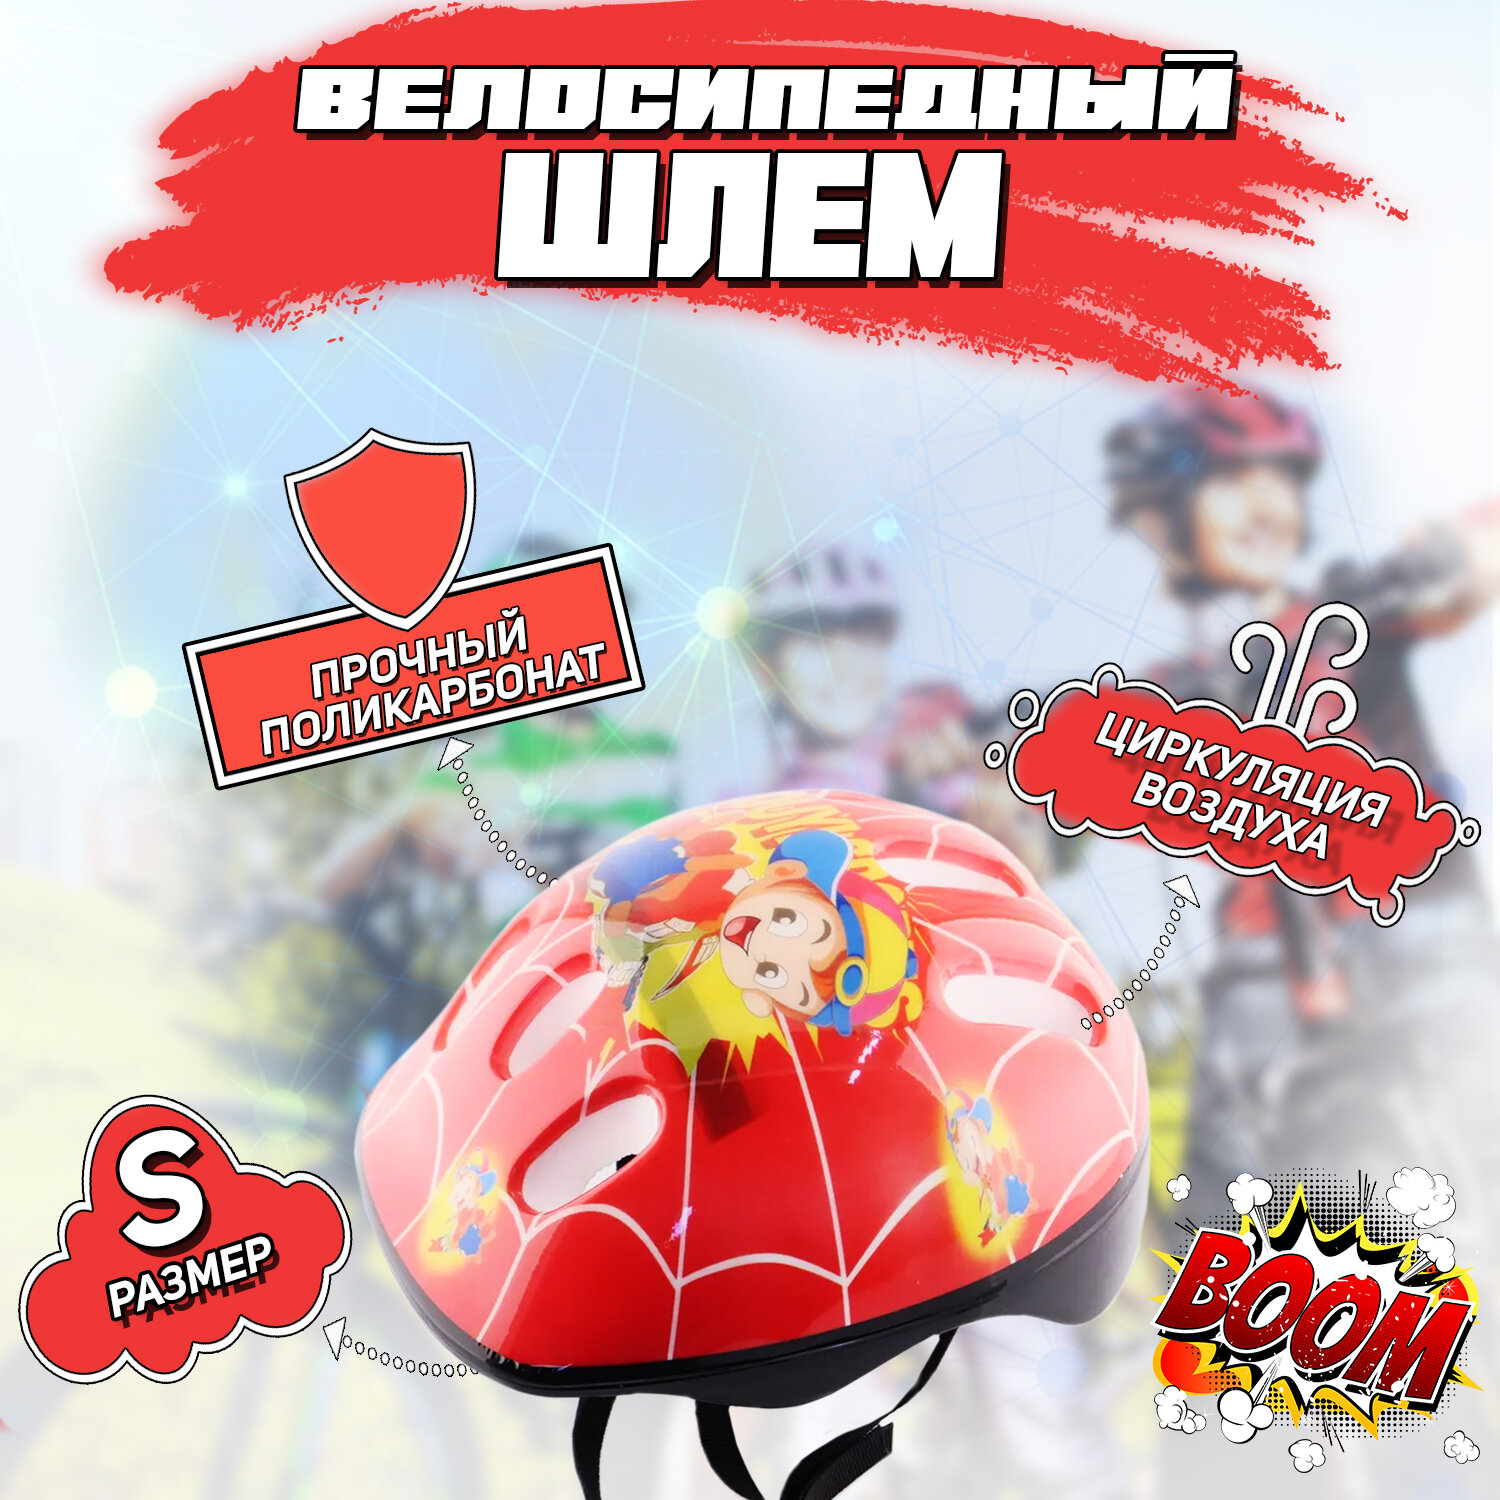 Шлем велосипедный детский (красный) "SPORTS"